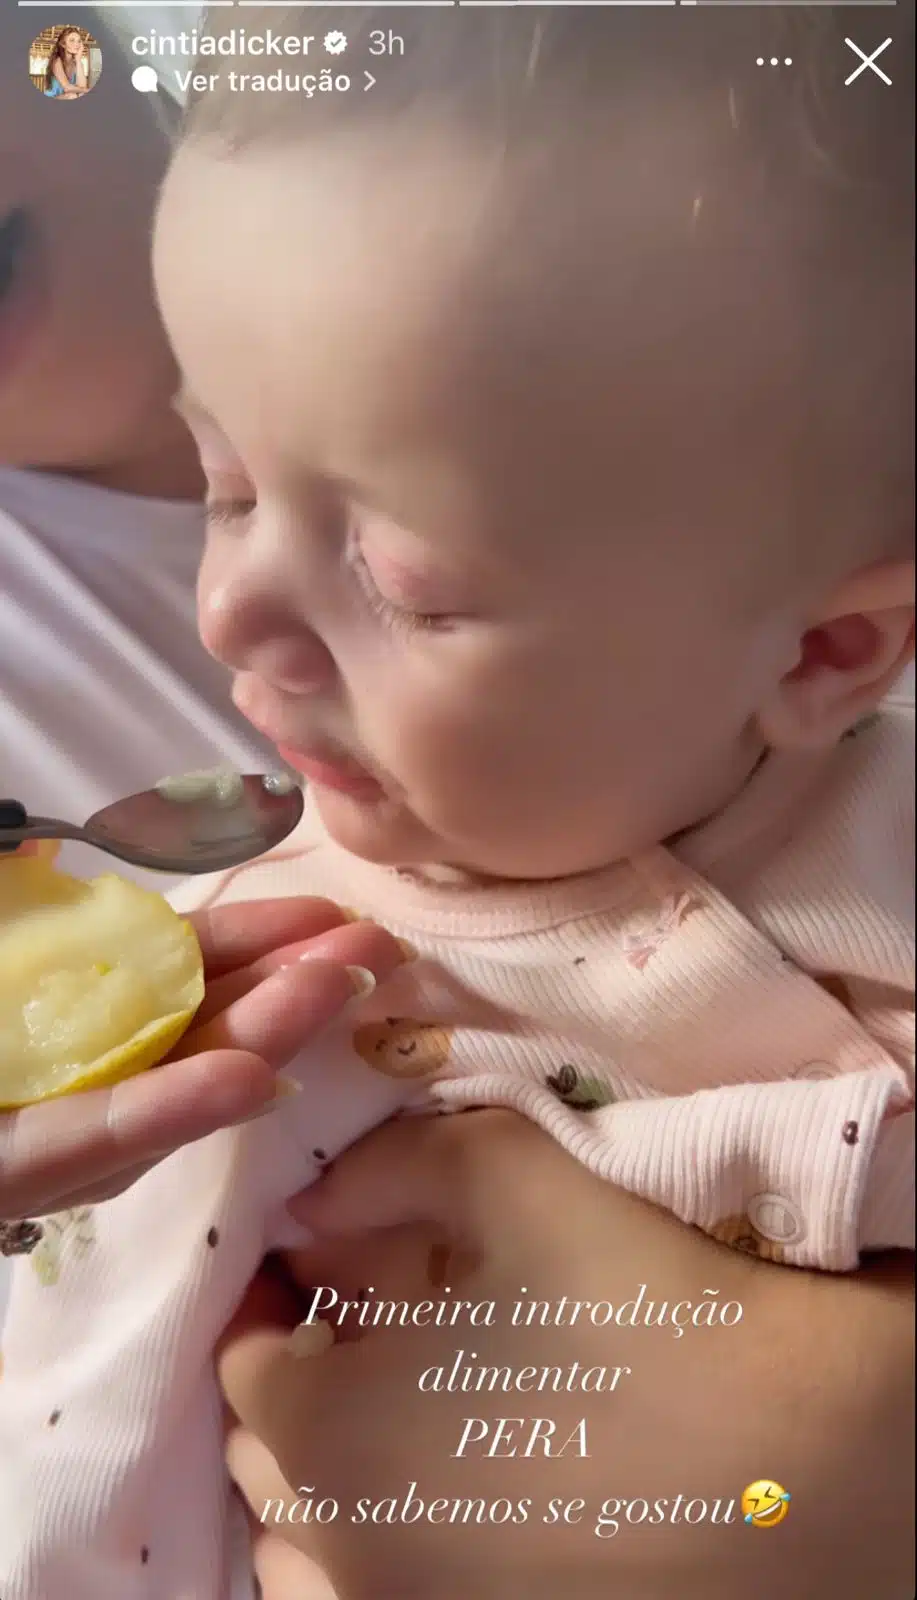 Cintia Dicker exibe sua bebê comendo fruta pelas primeira vez